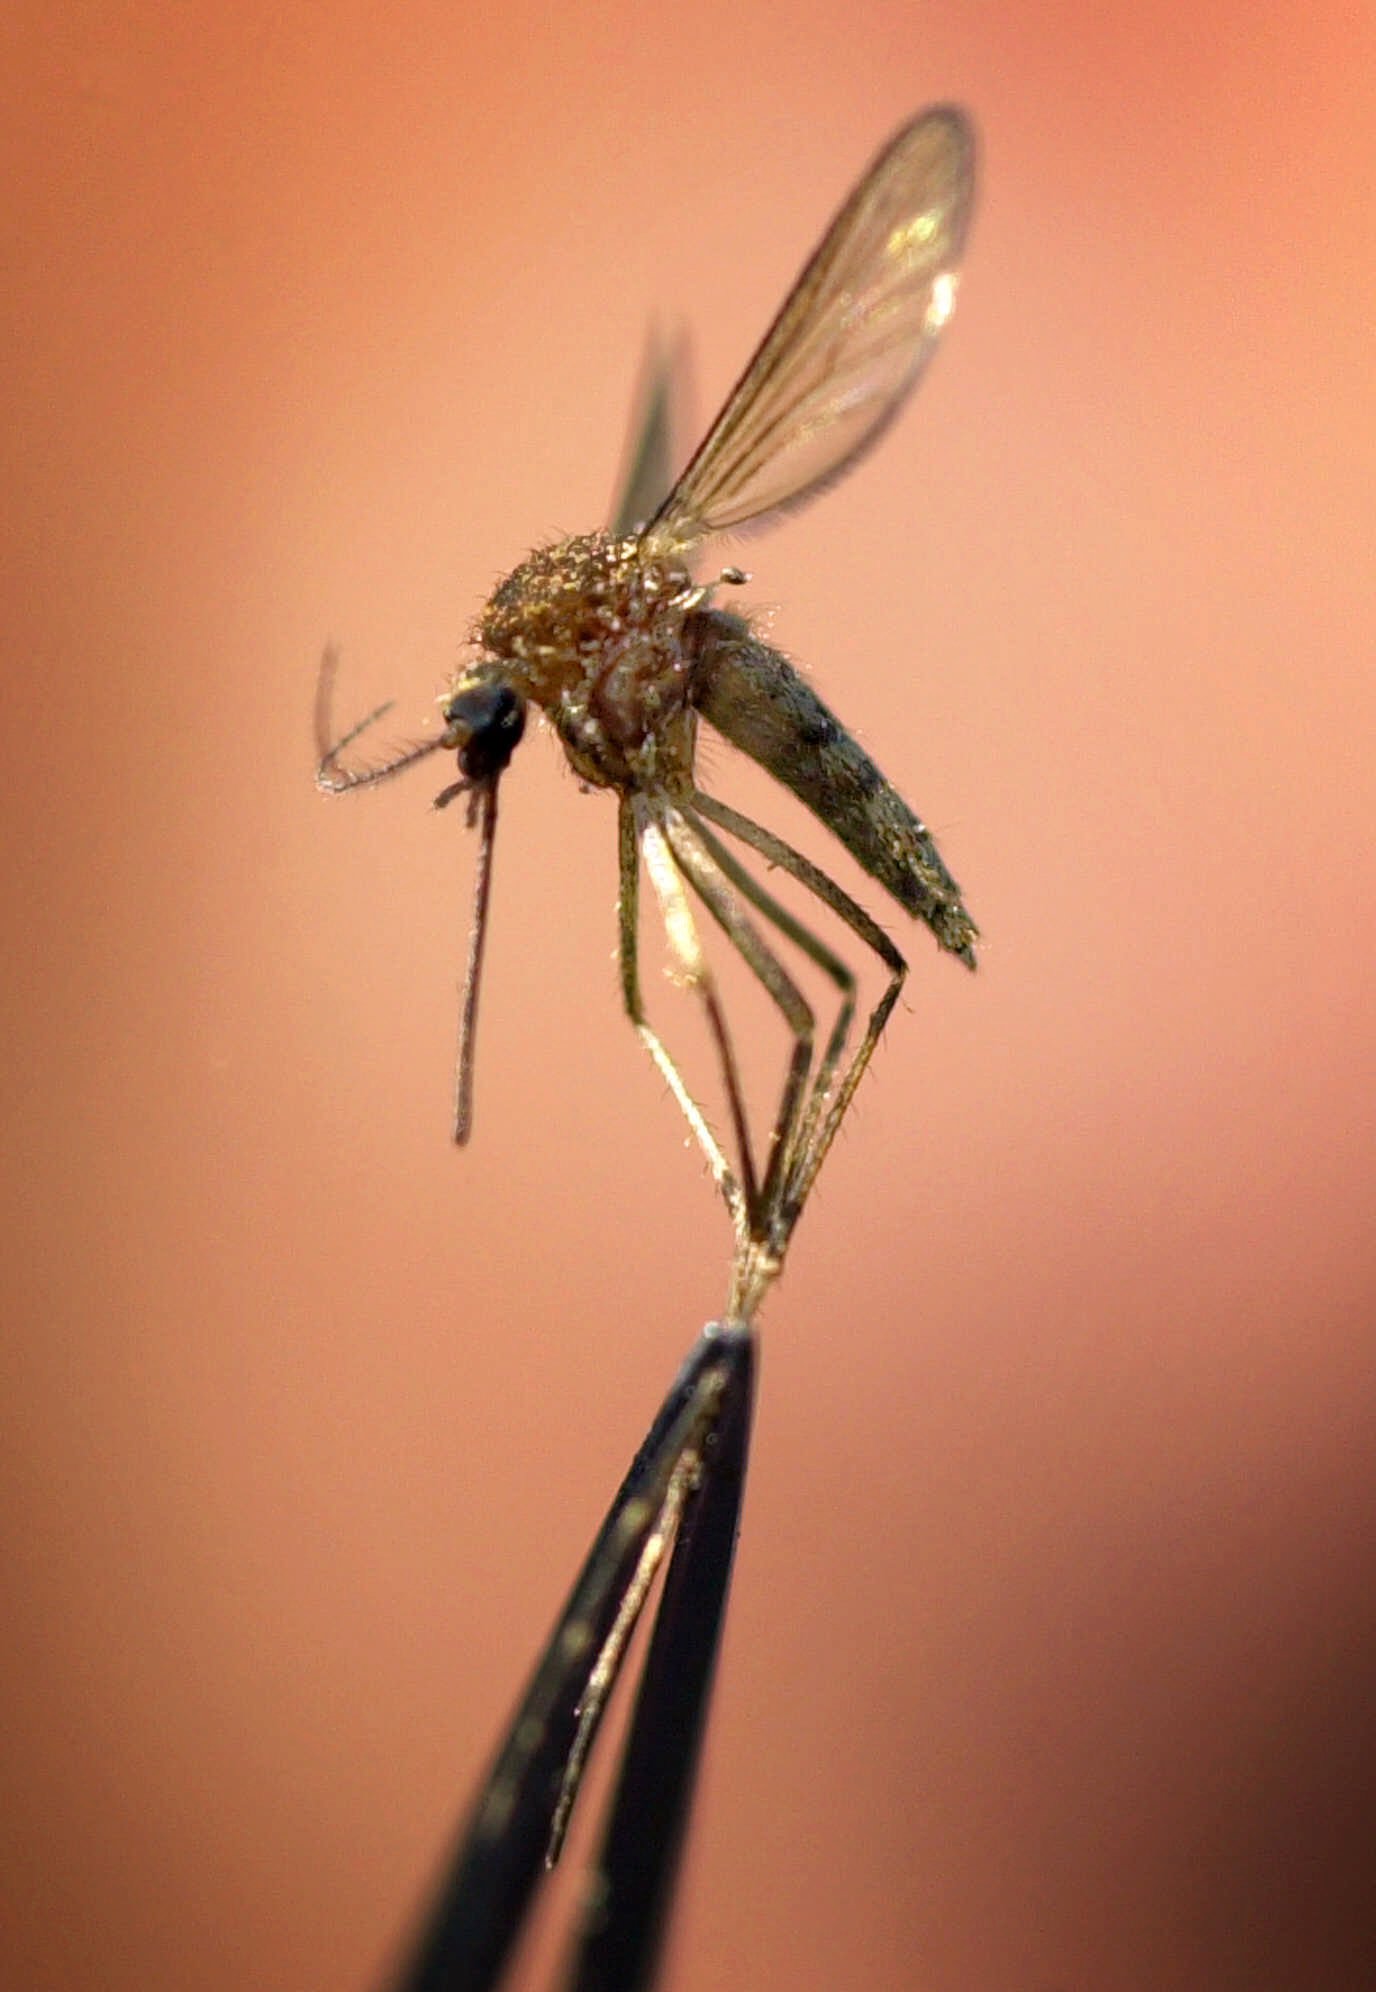 Ανακαλύφθηκε νέο ανθεκτικό παράσιτο της ελονοσίας